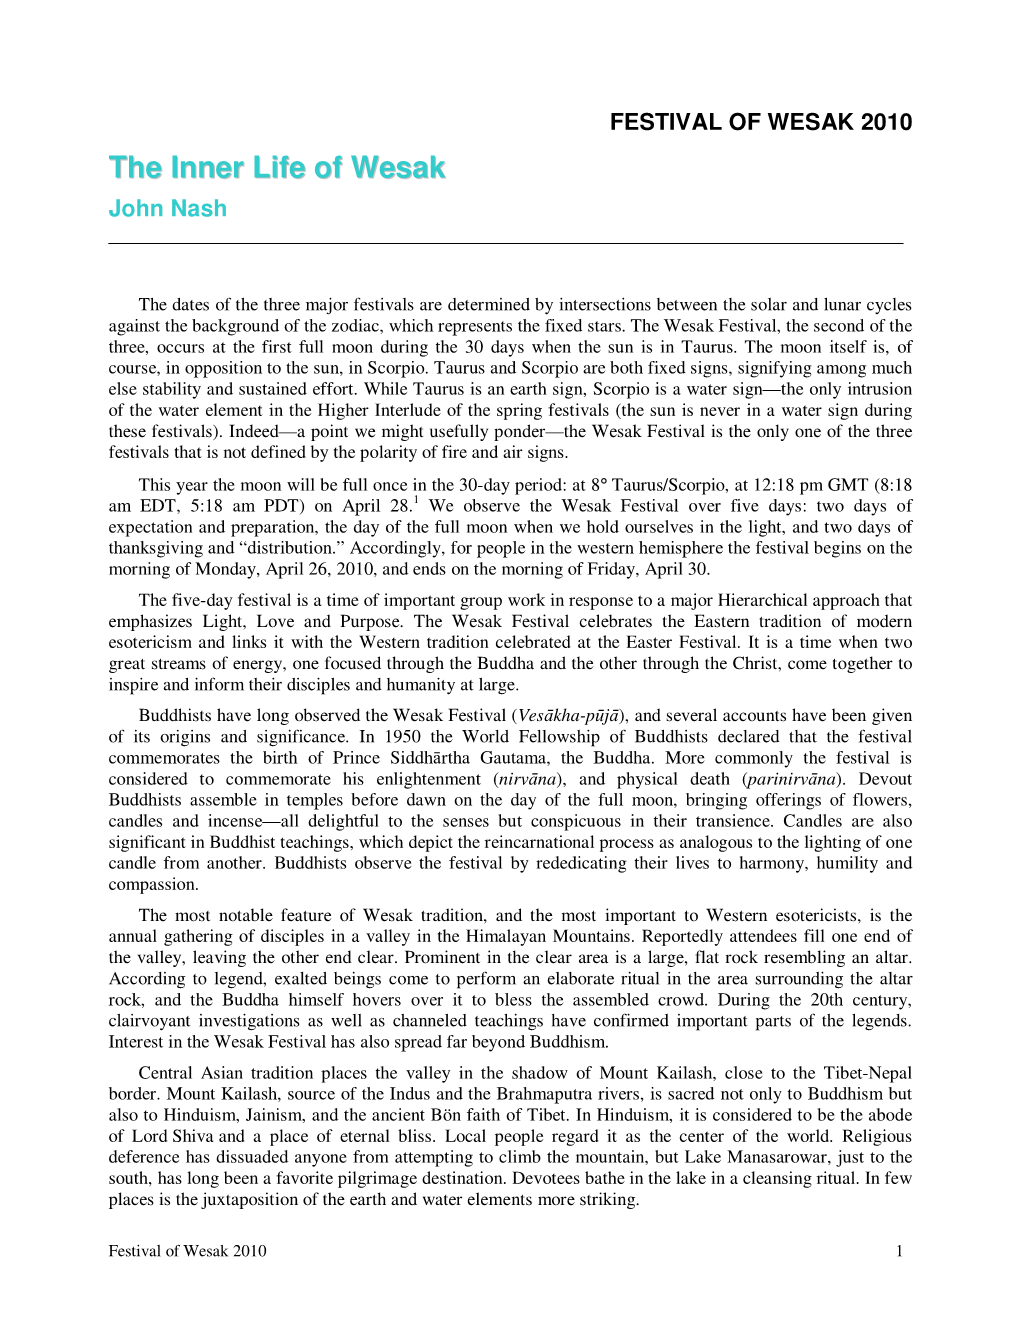 The Inner Life of Wesak John Nash